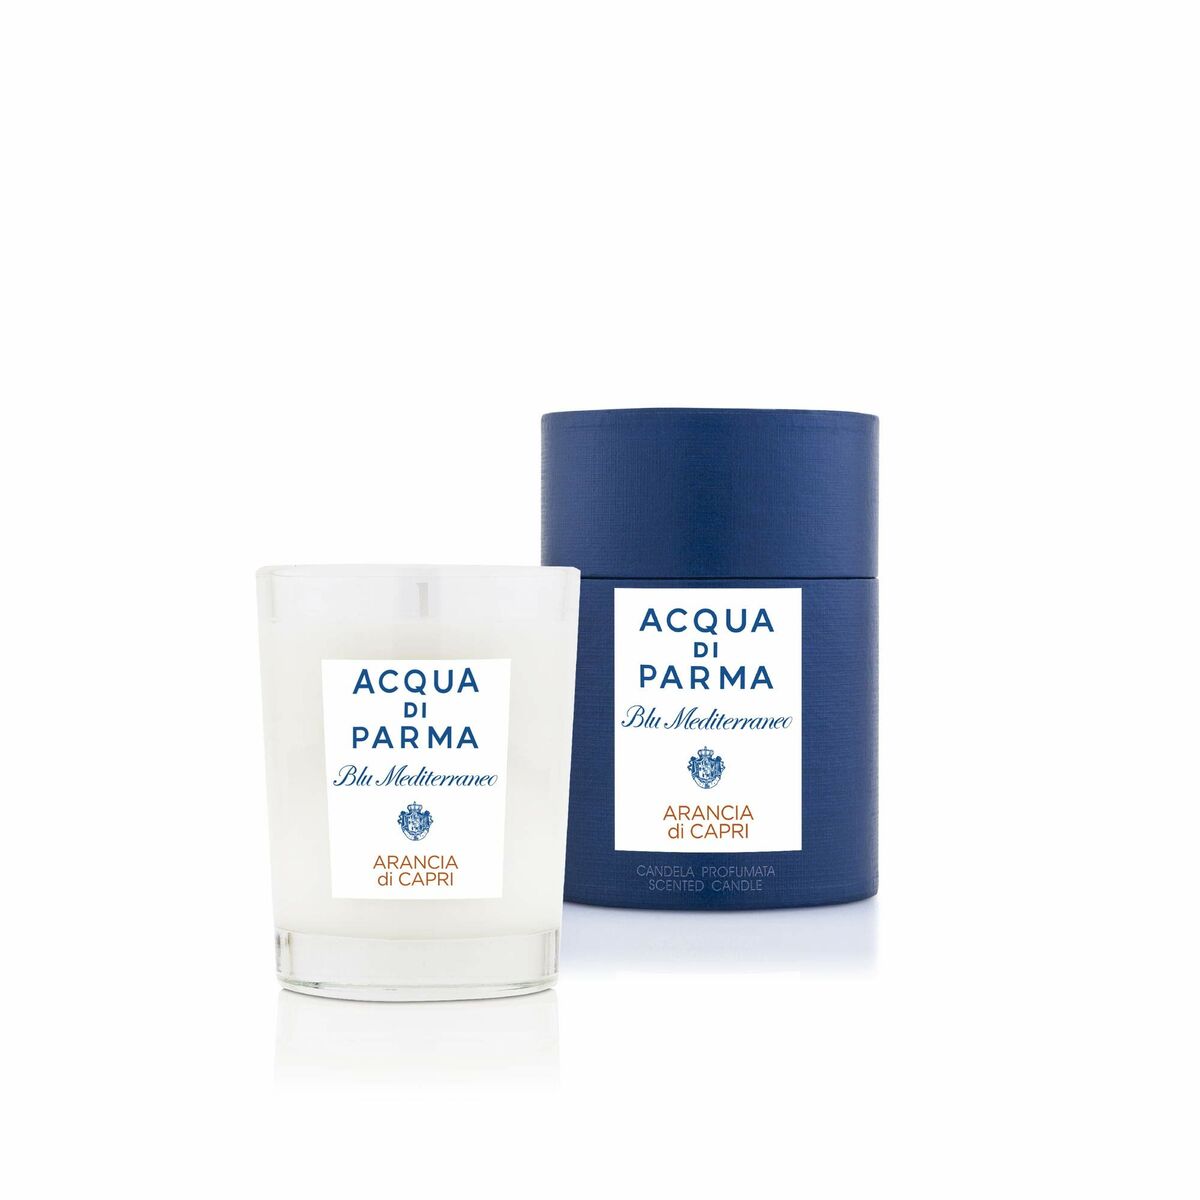 Bougie Parfumée Acqua Di Parma 200 g Blu mediterraneo Arancia Di Capri